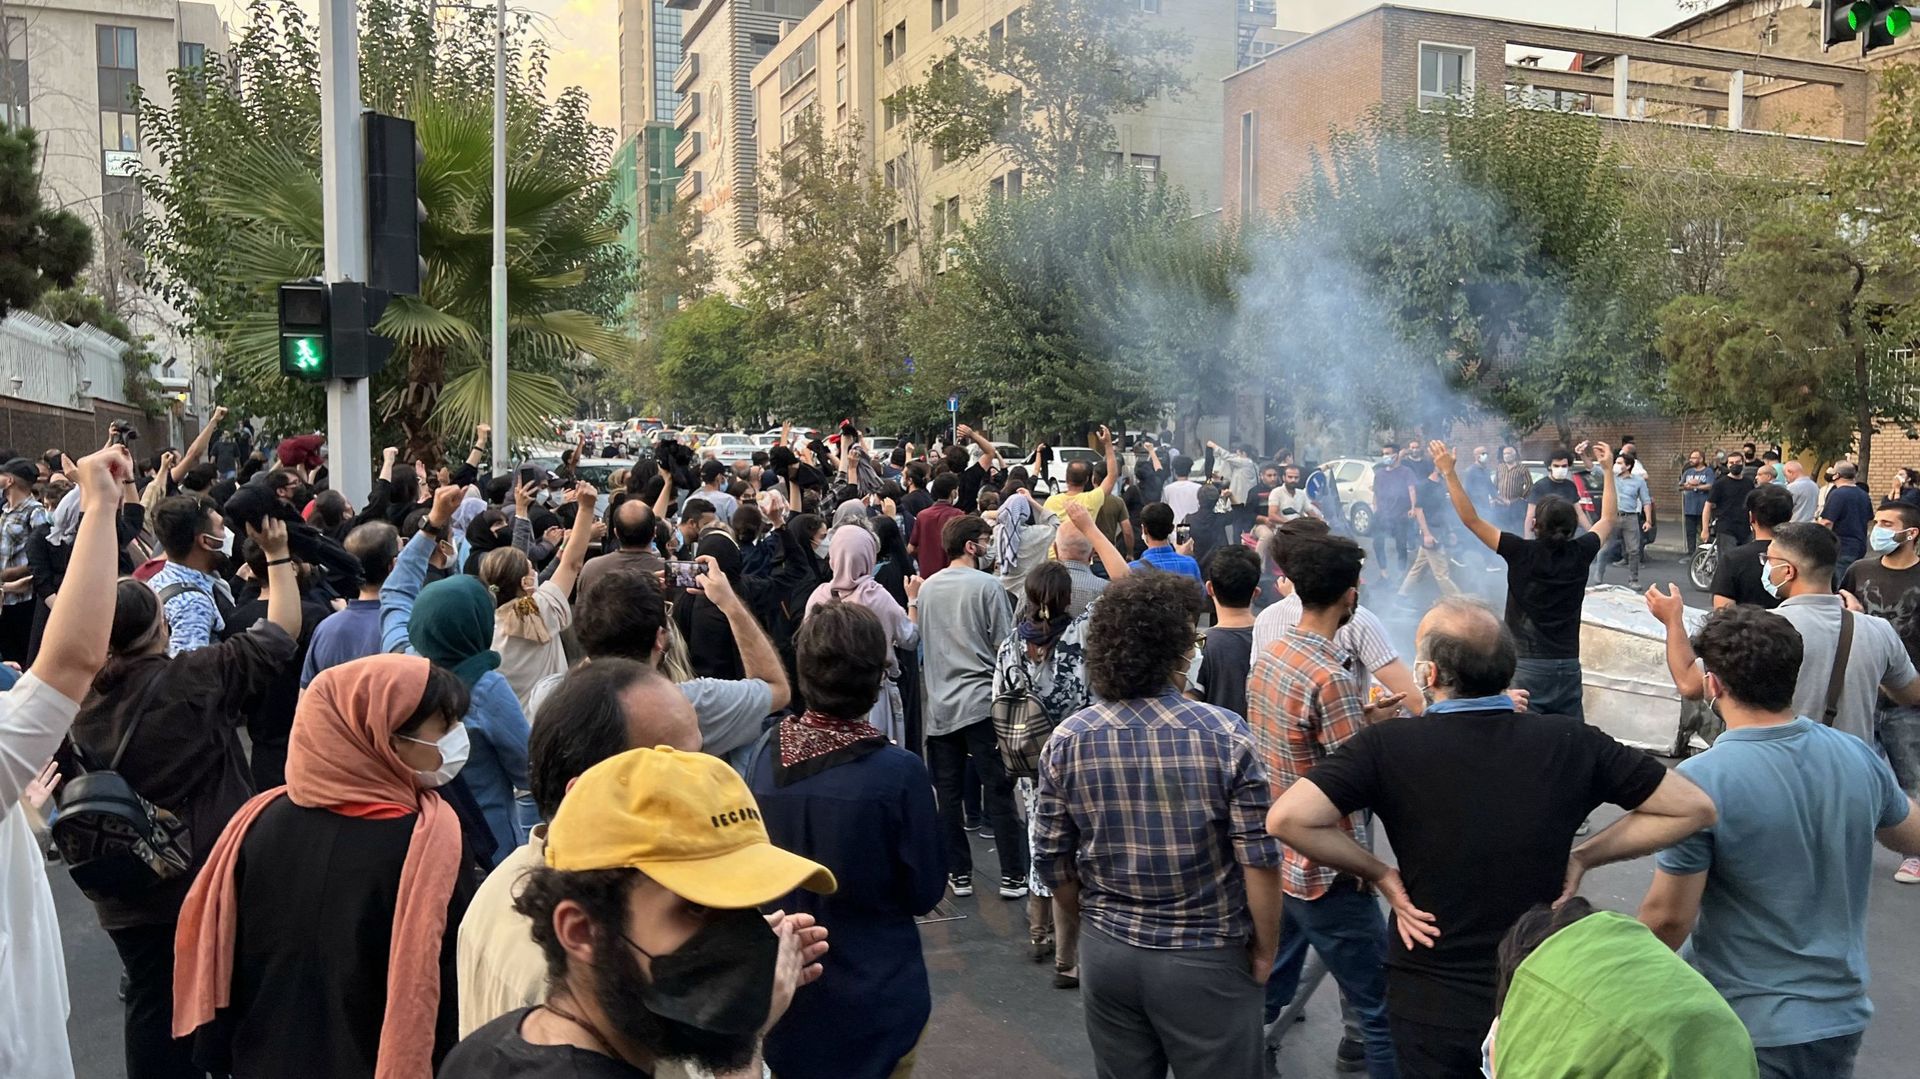 Extrait d’une vidéo de manifestation en Iran